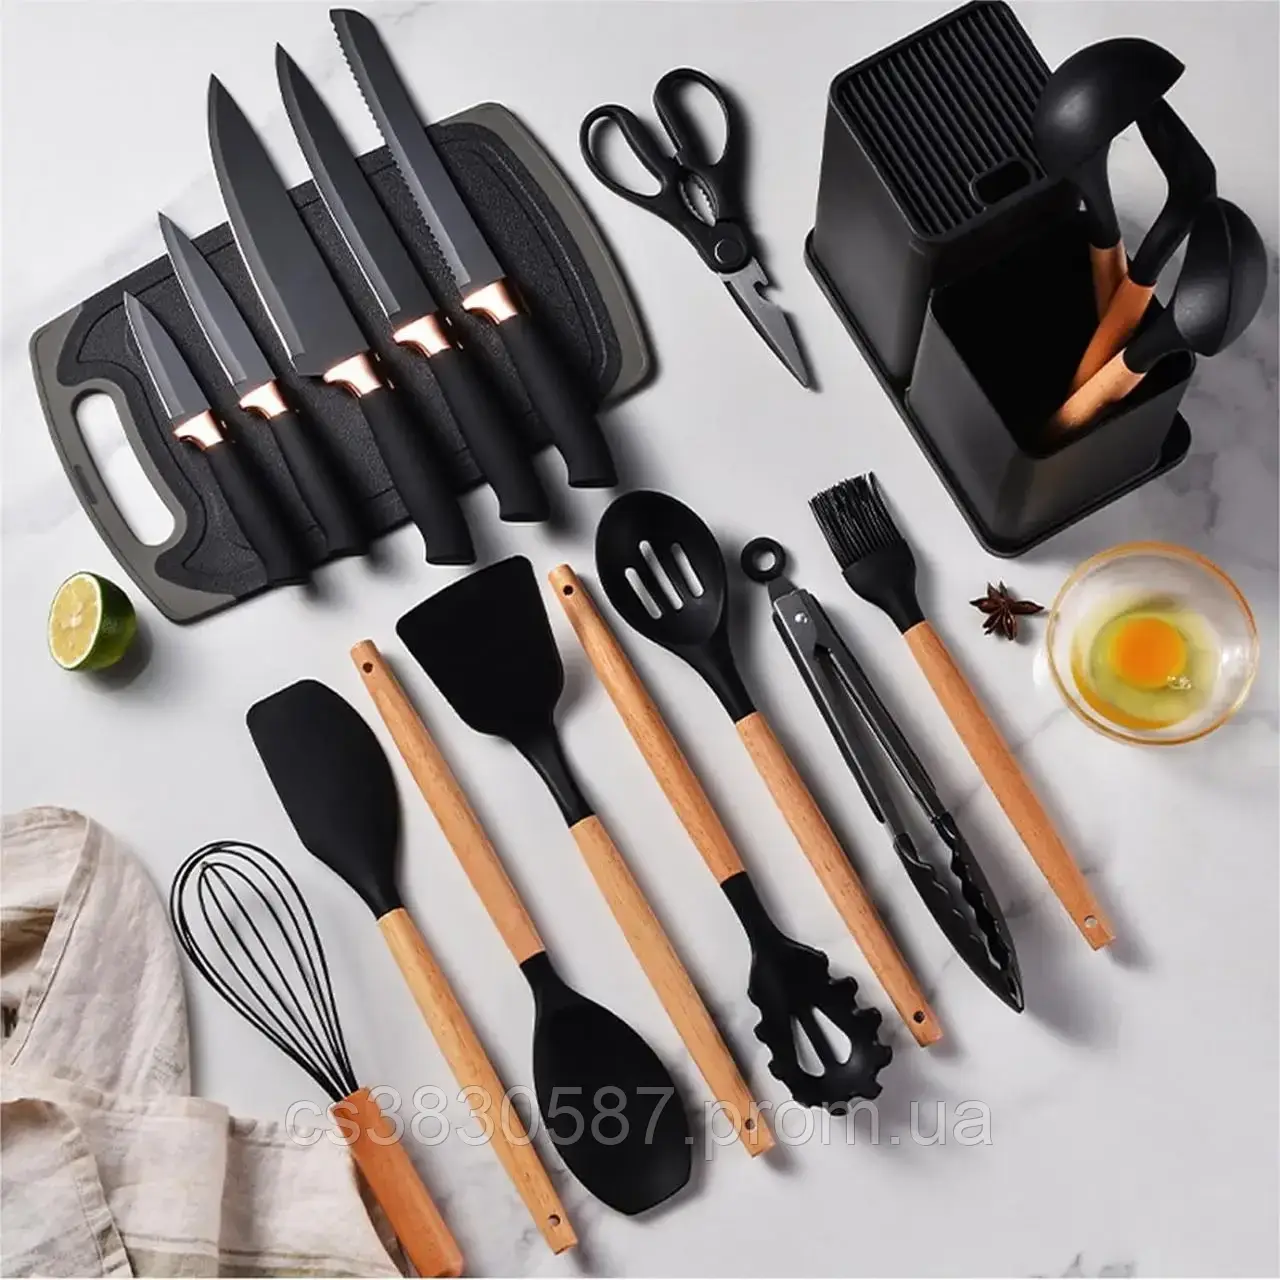 Набір ножів + кухонне начиння із силікону 19 предметів на підставці ZP-107 Набір кухонного приладдя YYY